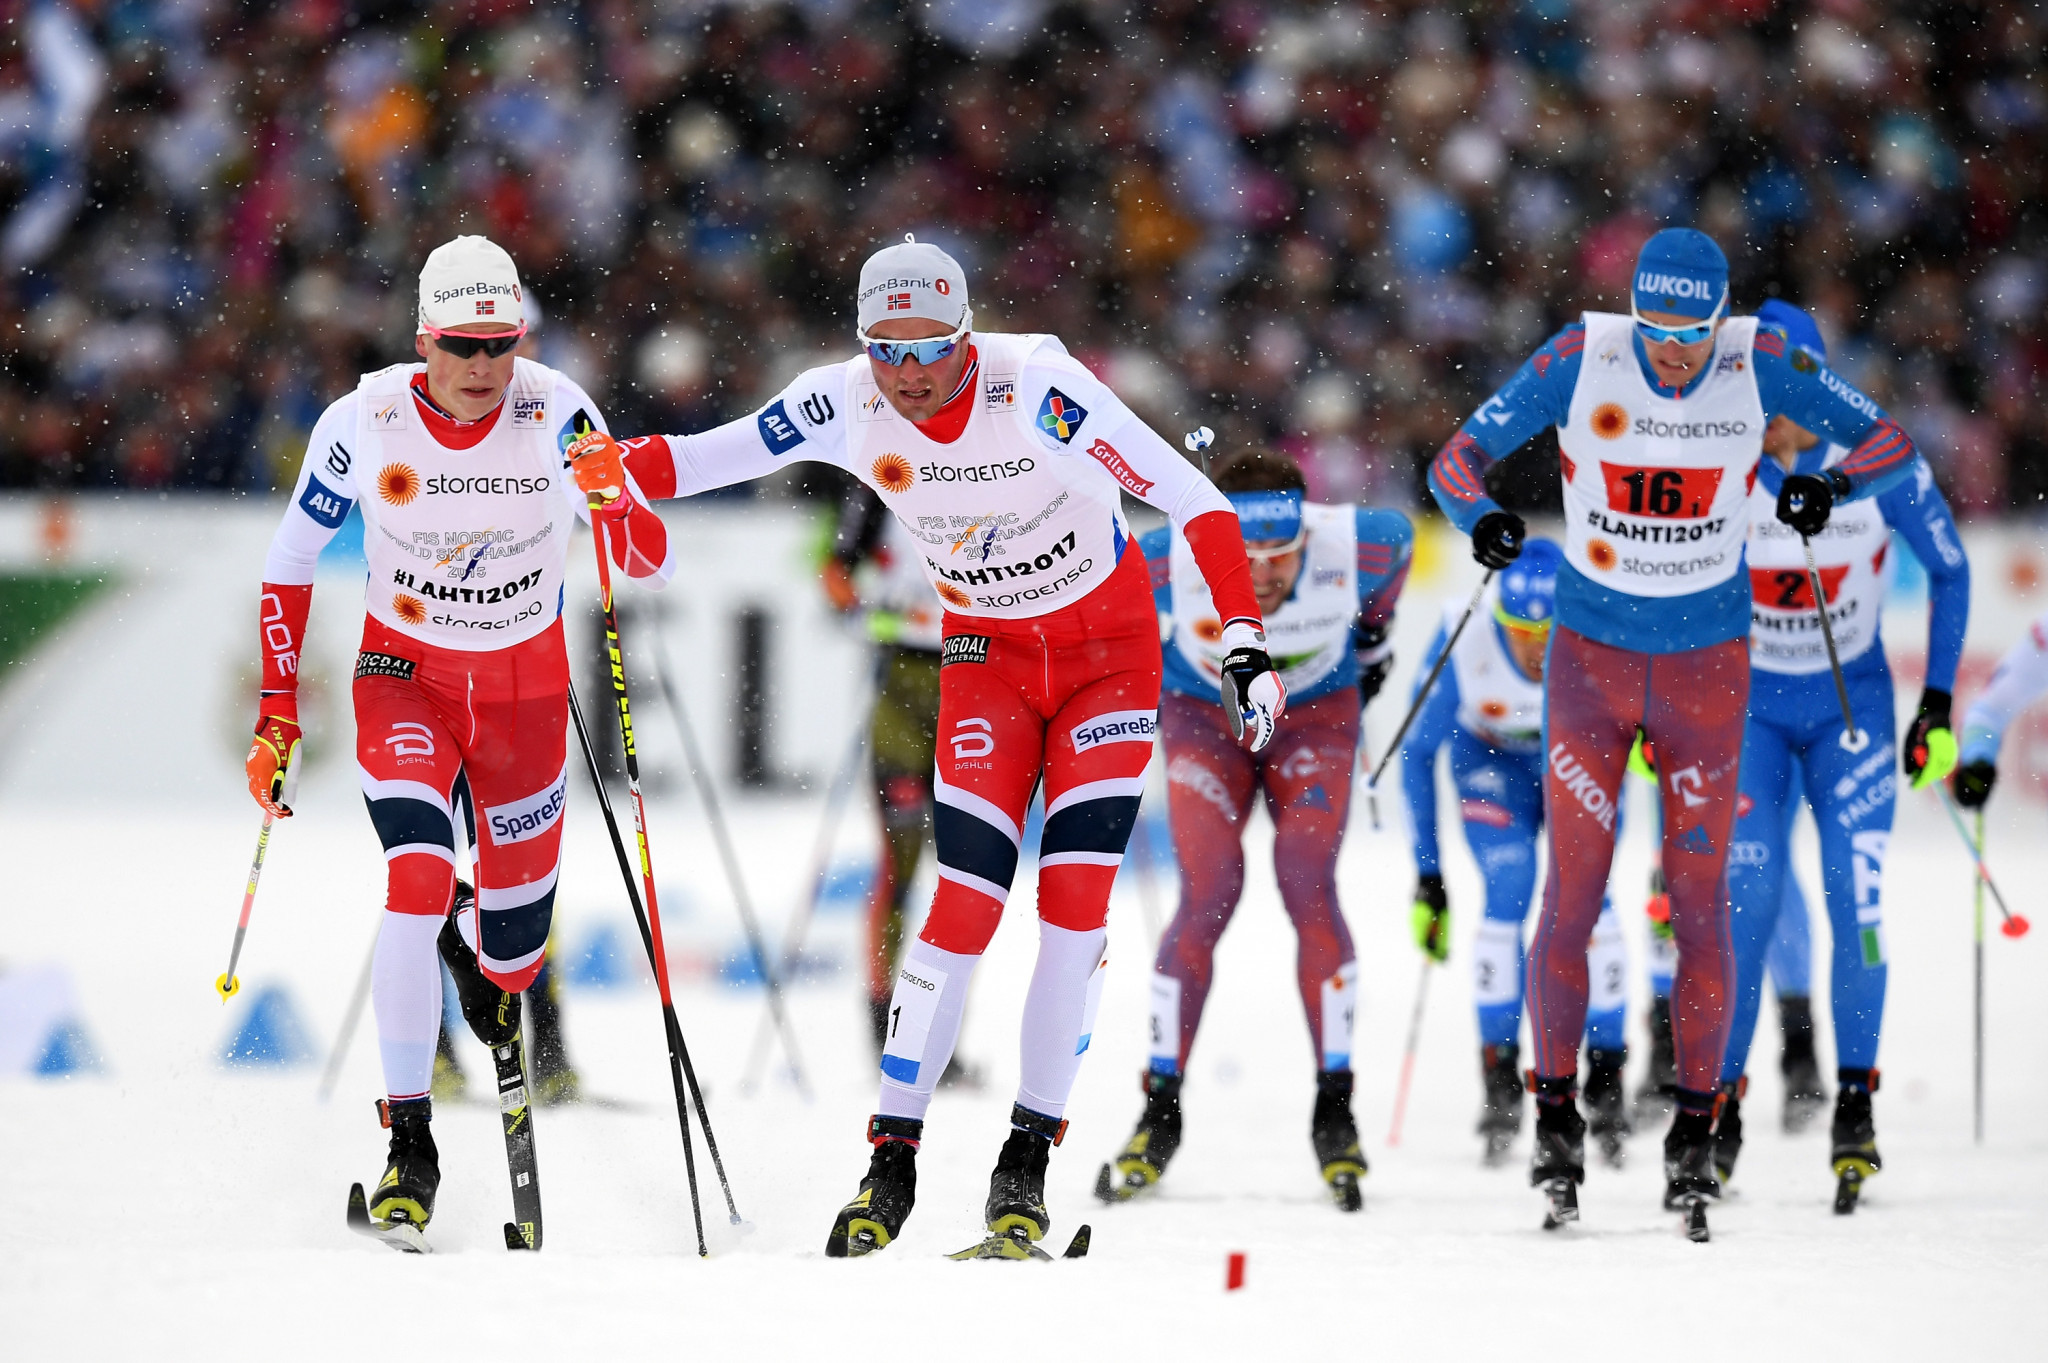 Johannes Høsflot Klæbo and Emil Iversen won the men's race for Norway ©Getty Images